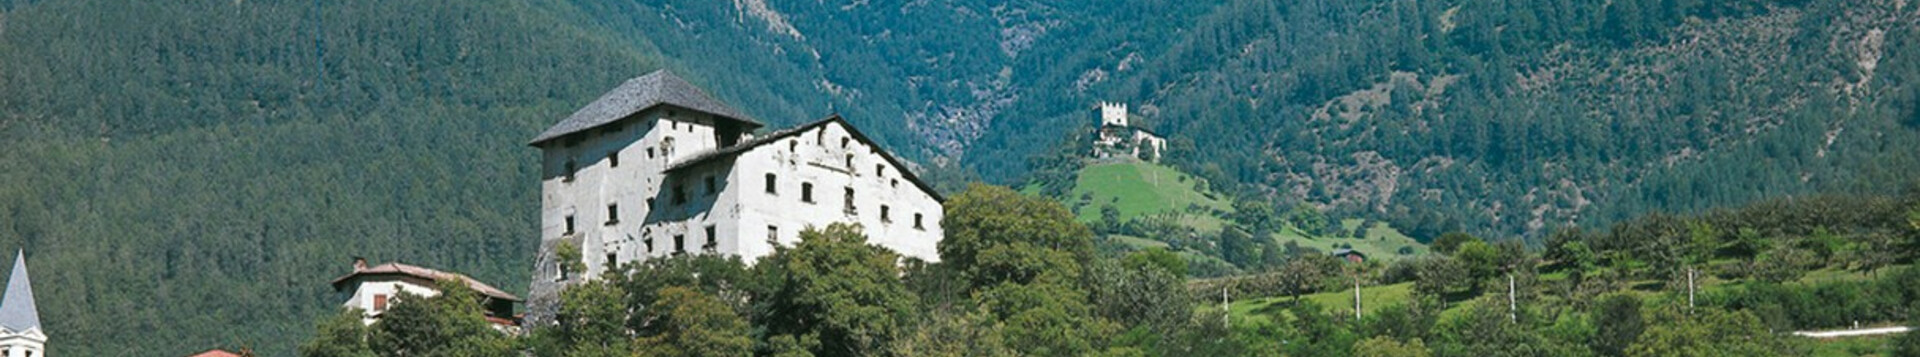 Eine düstere Burg in den Alpen